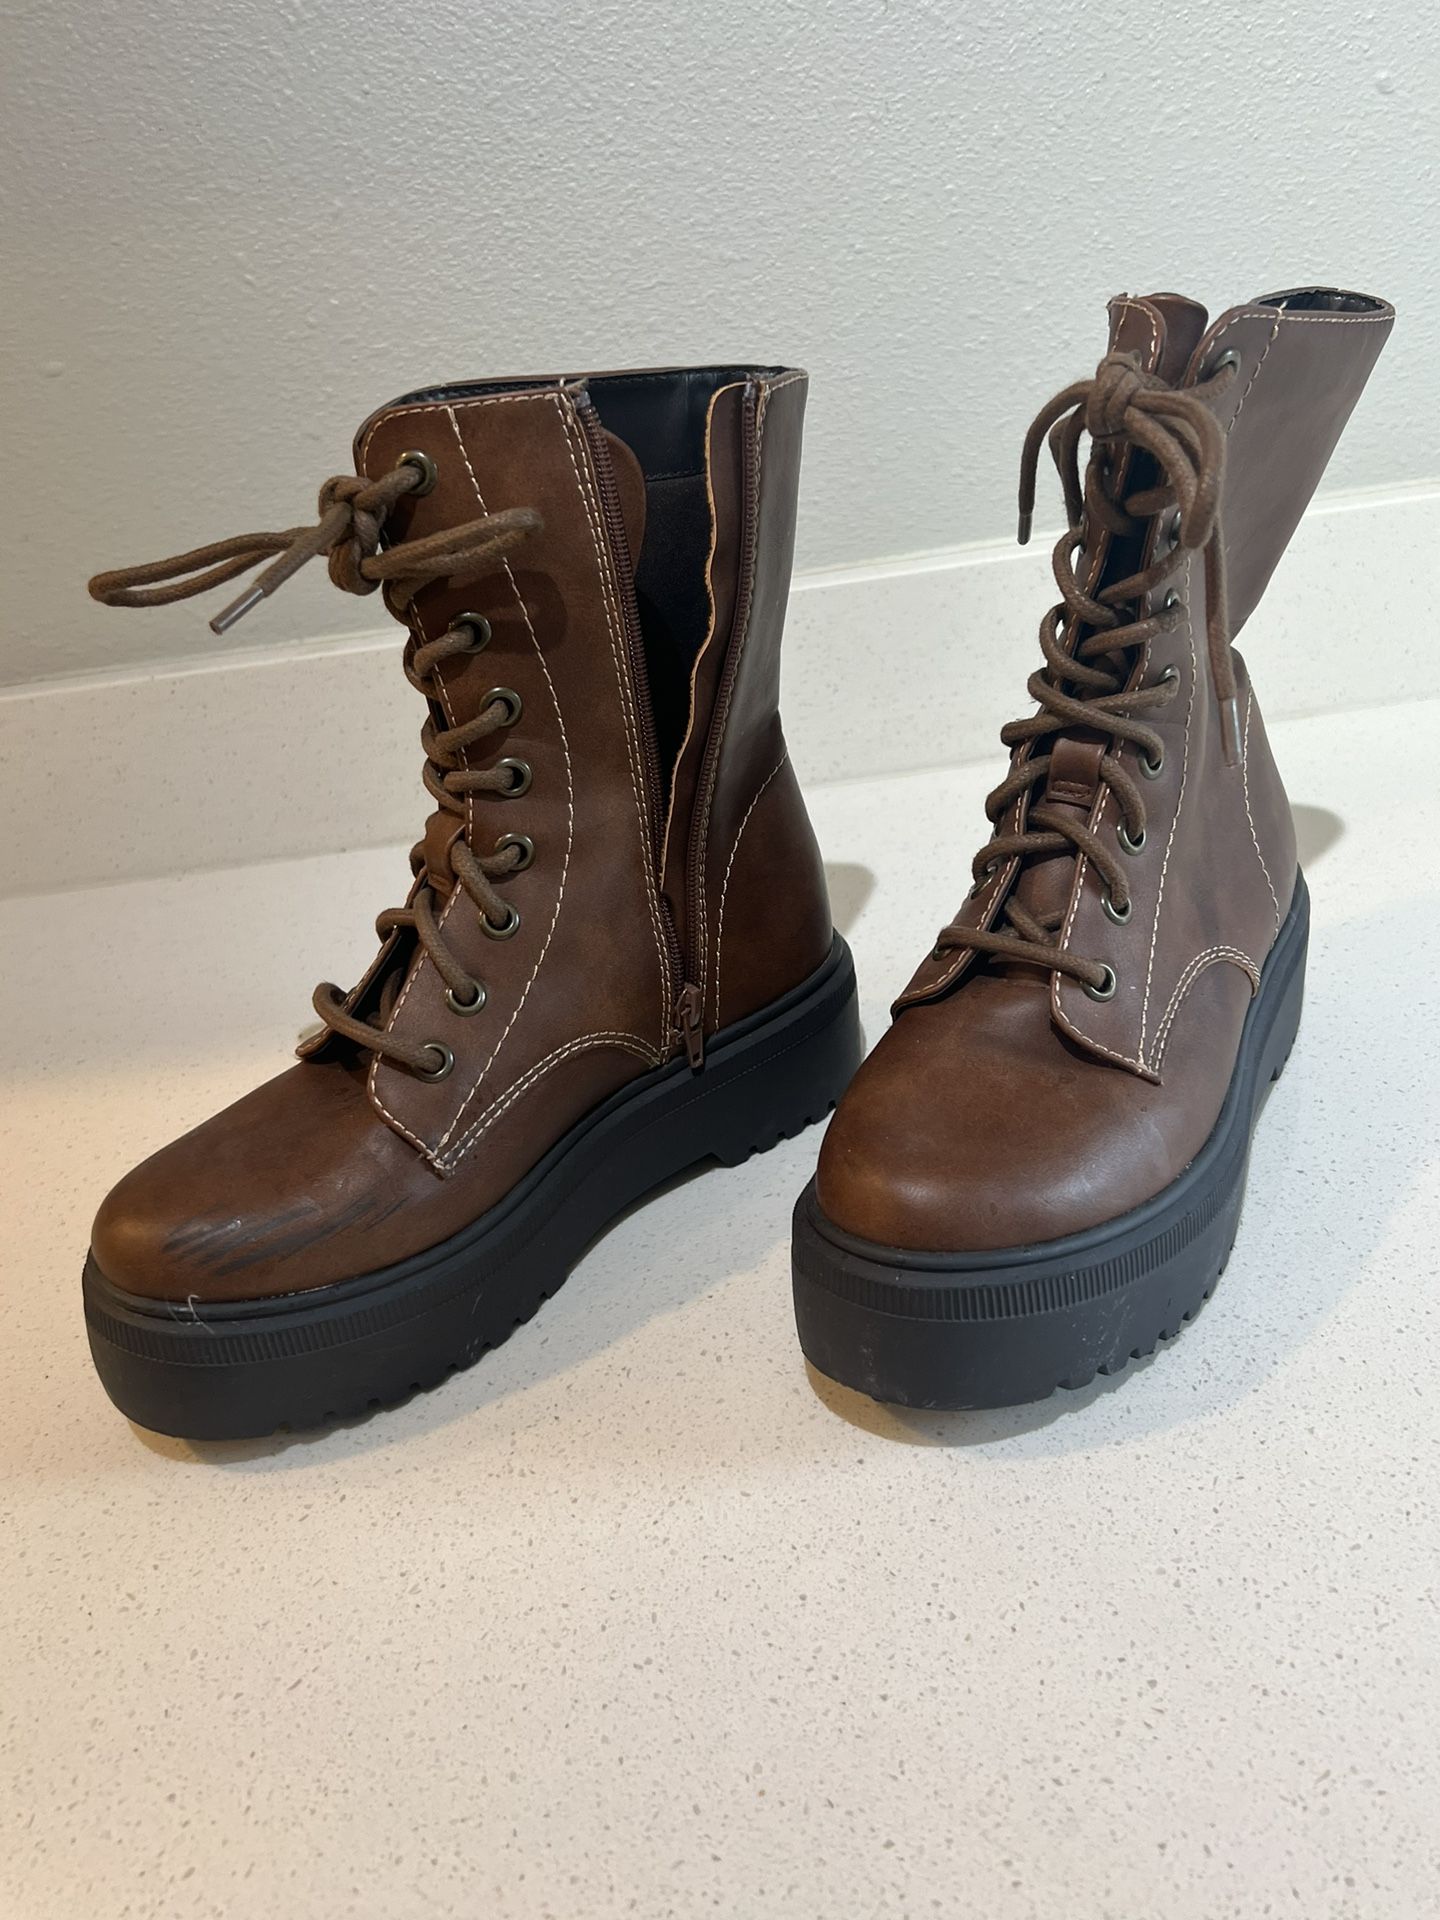 Women’s 7.5 Designer Zip Up Heeled Boots